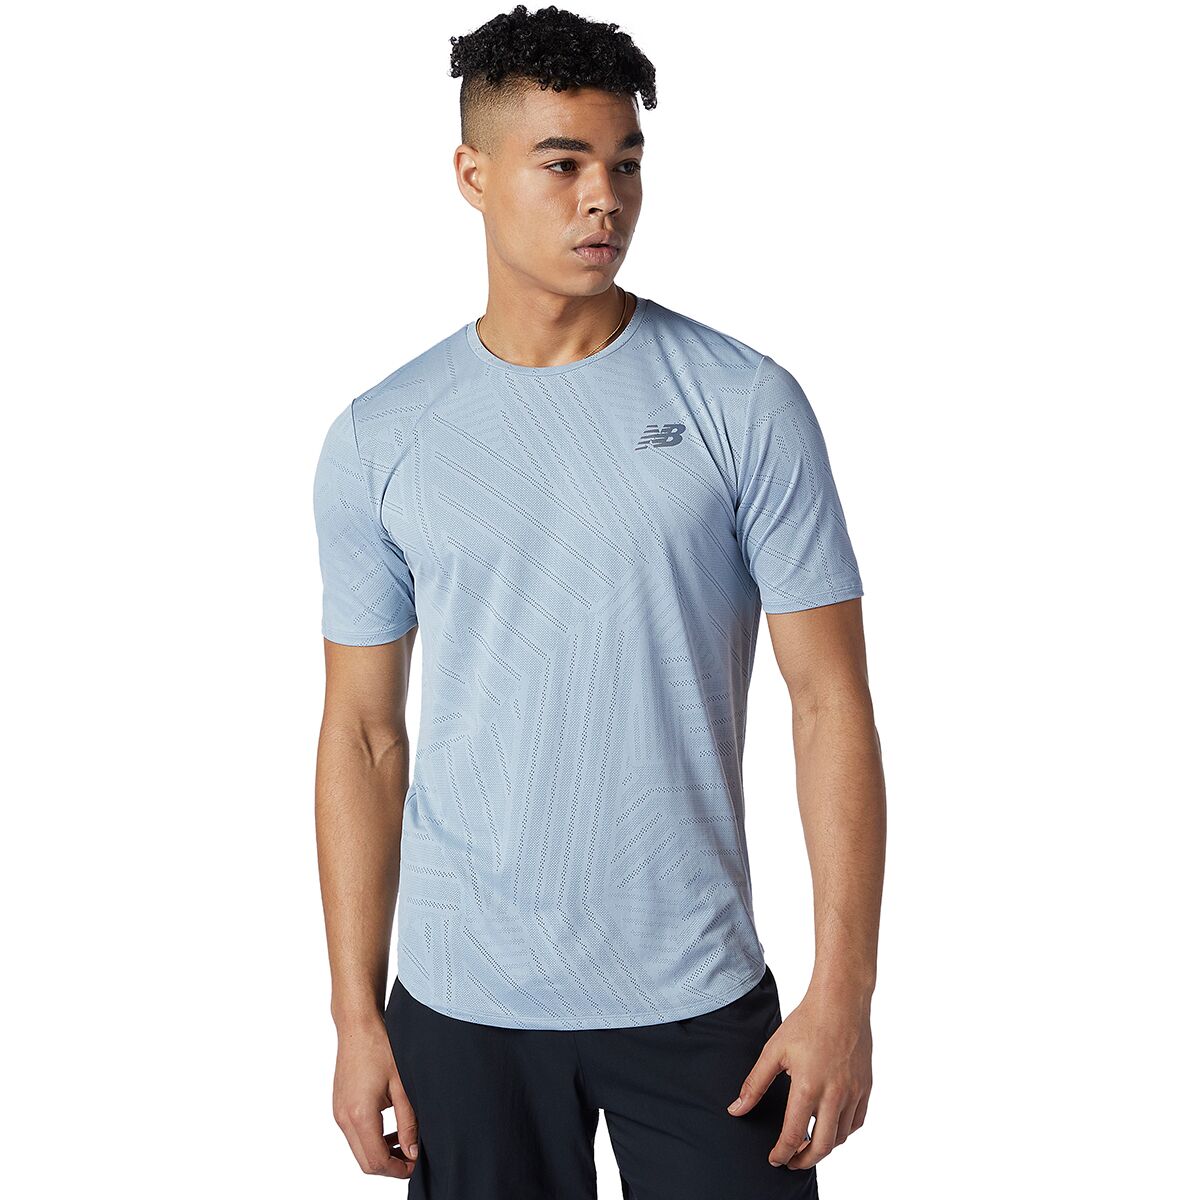 Q Speed Short-Sleeve Shirt - Men